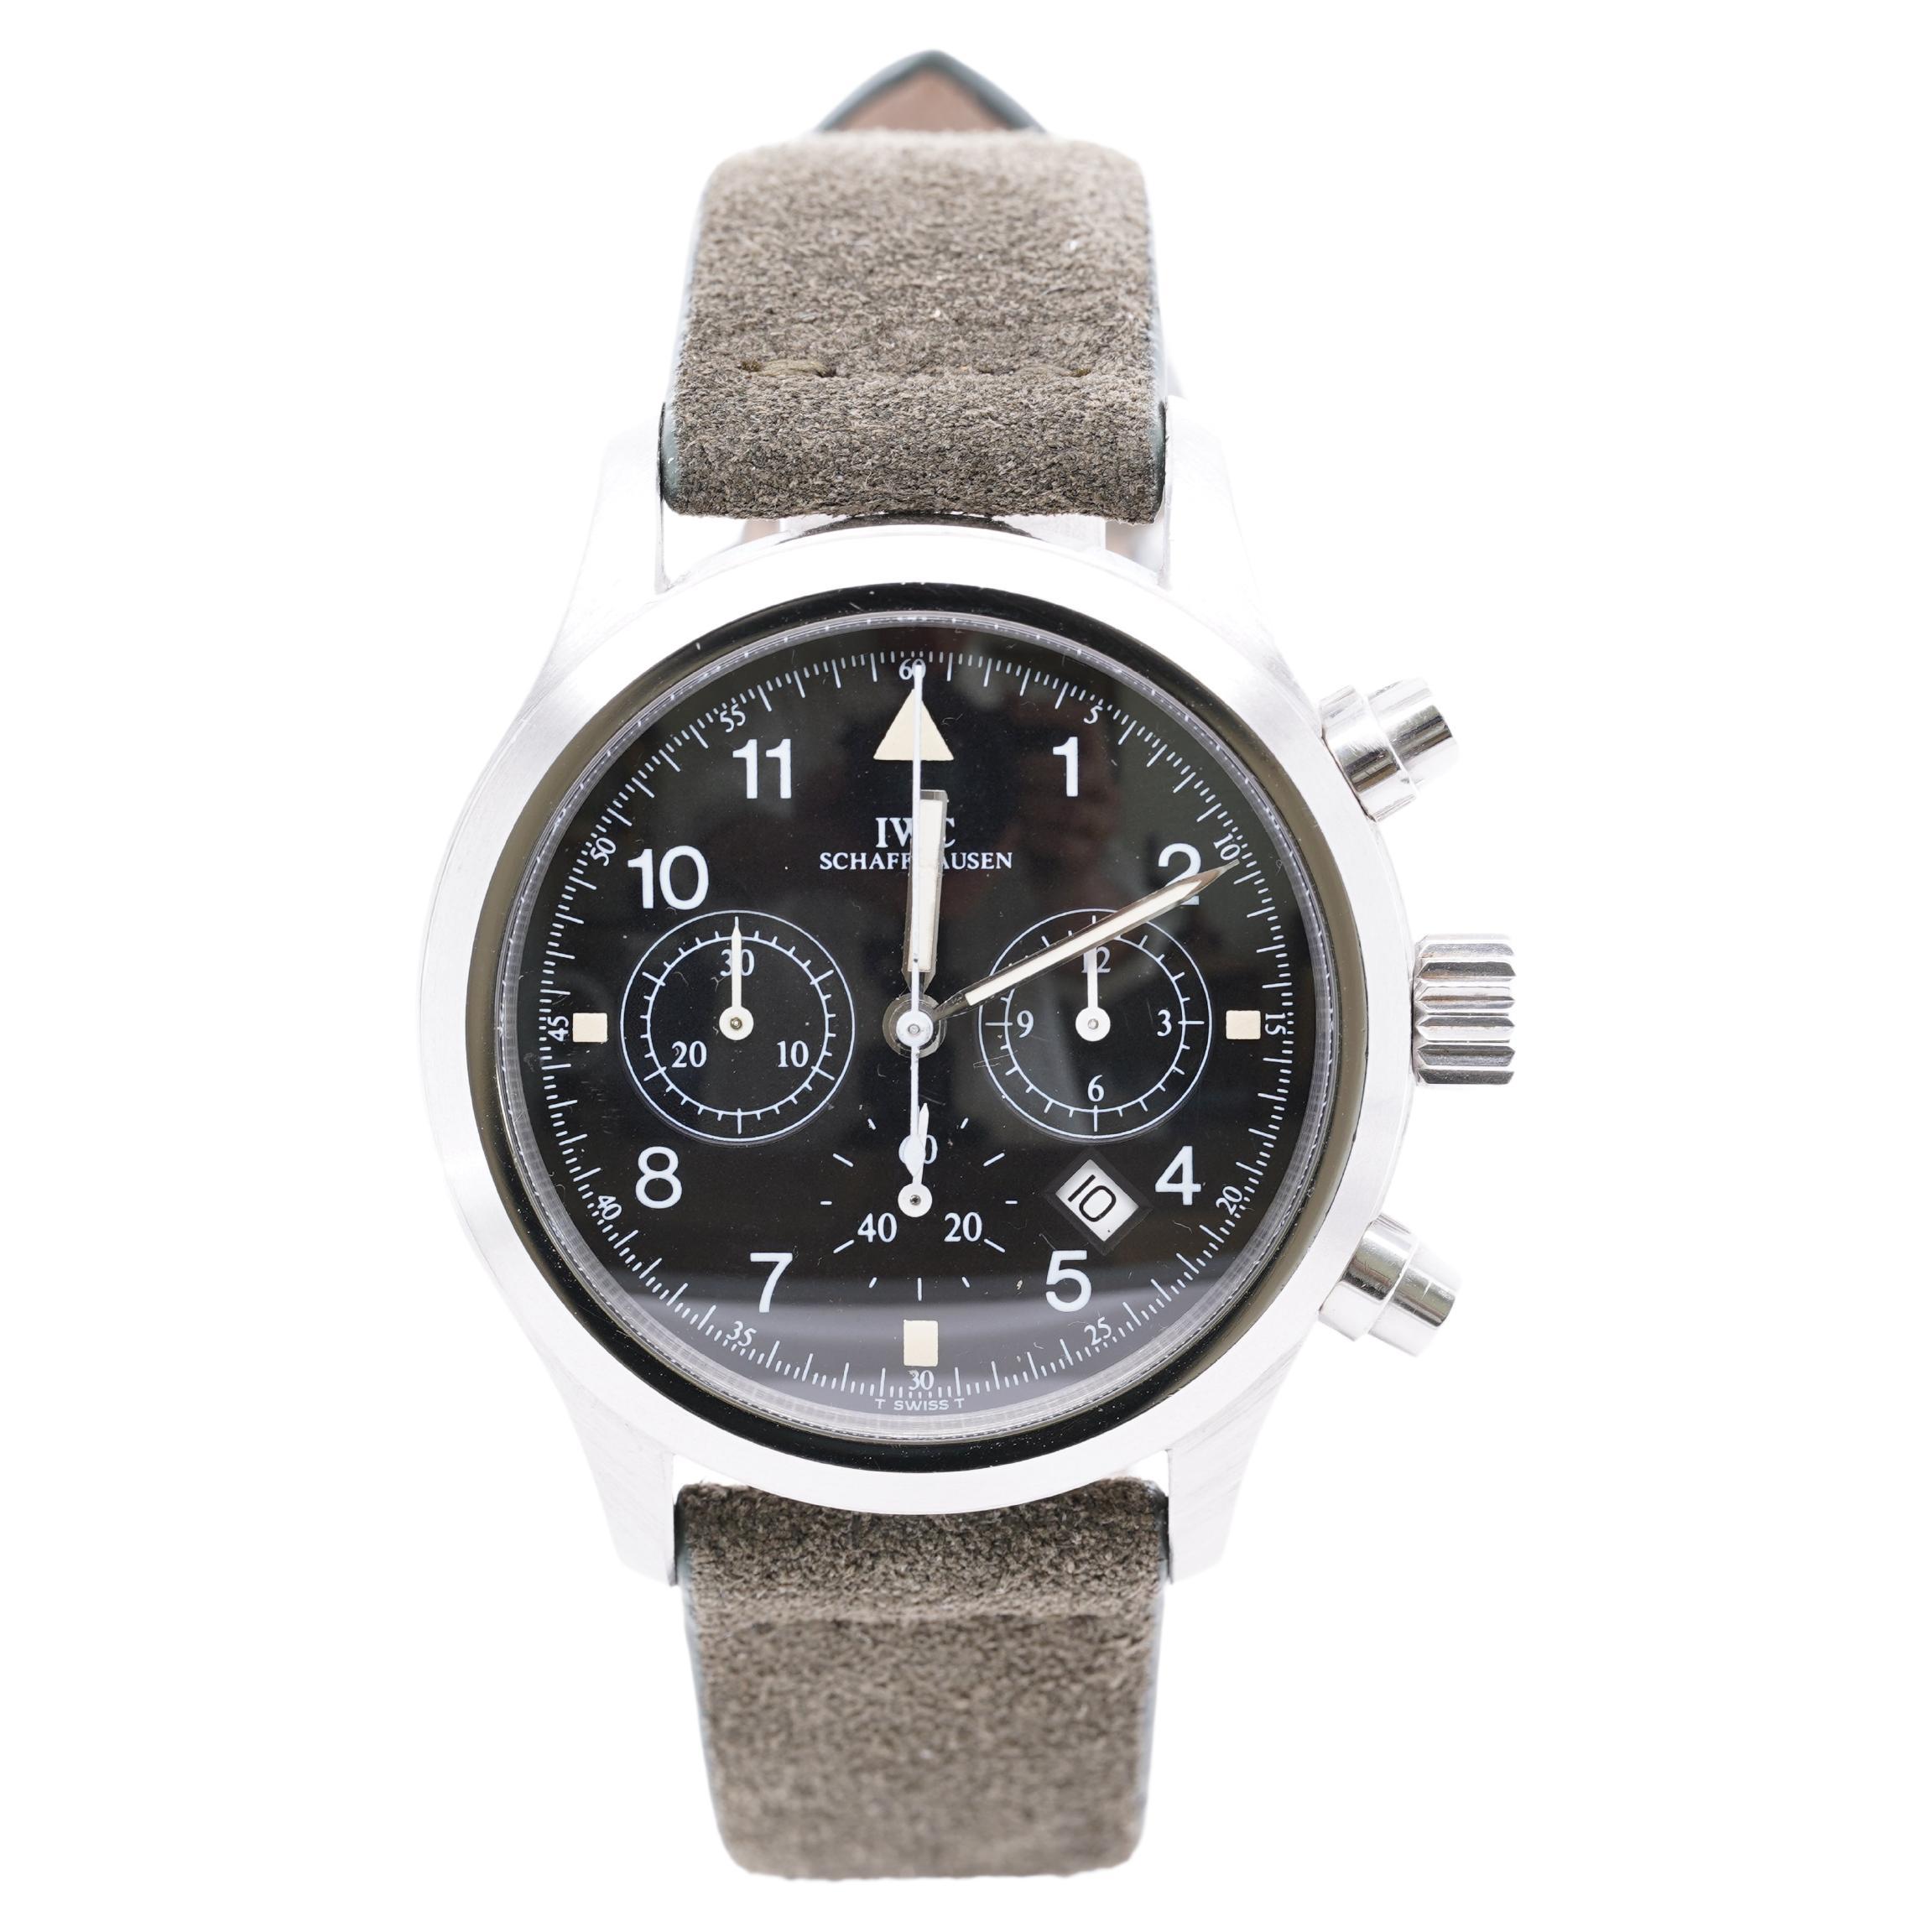 IWC Schaffhausen Fliegerchronograph Pilot's Watch Suede Strap Orig Box